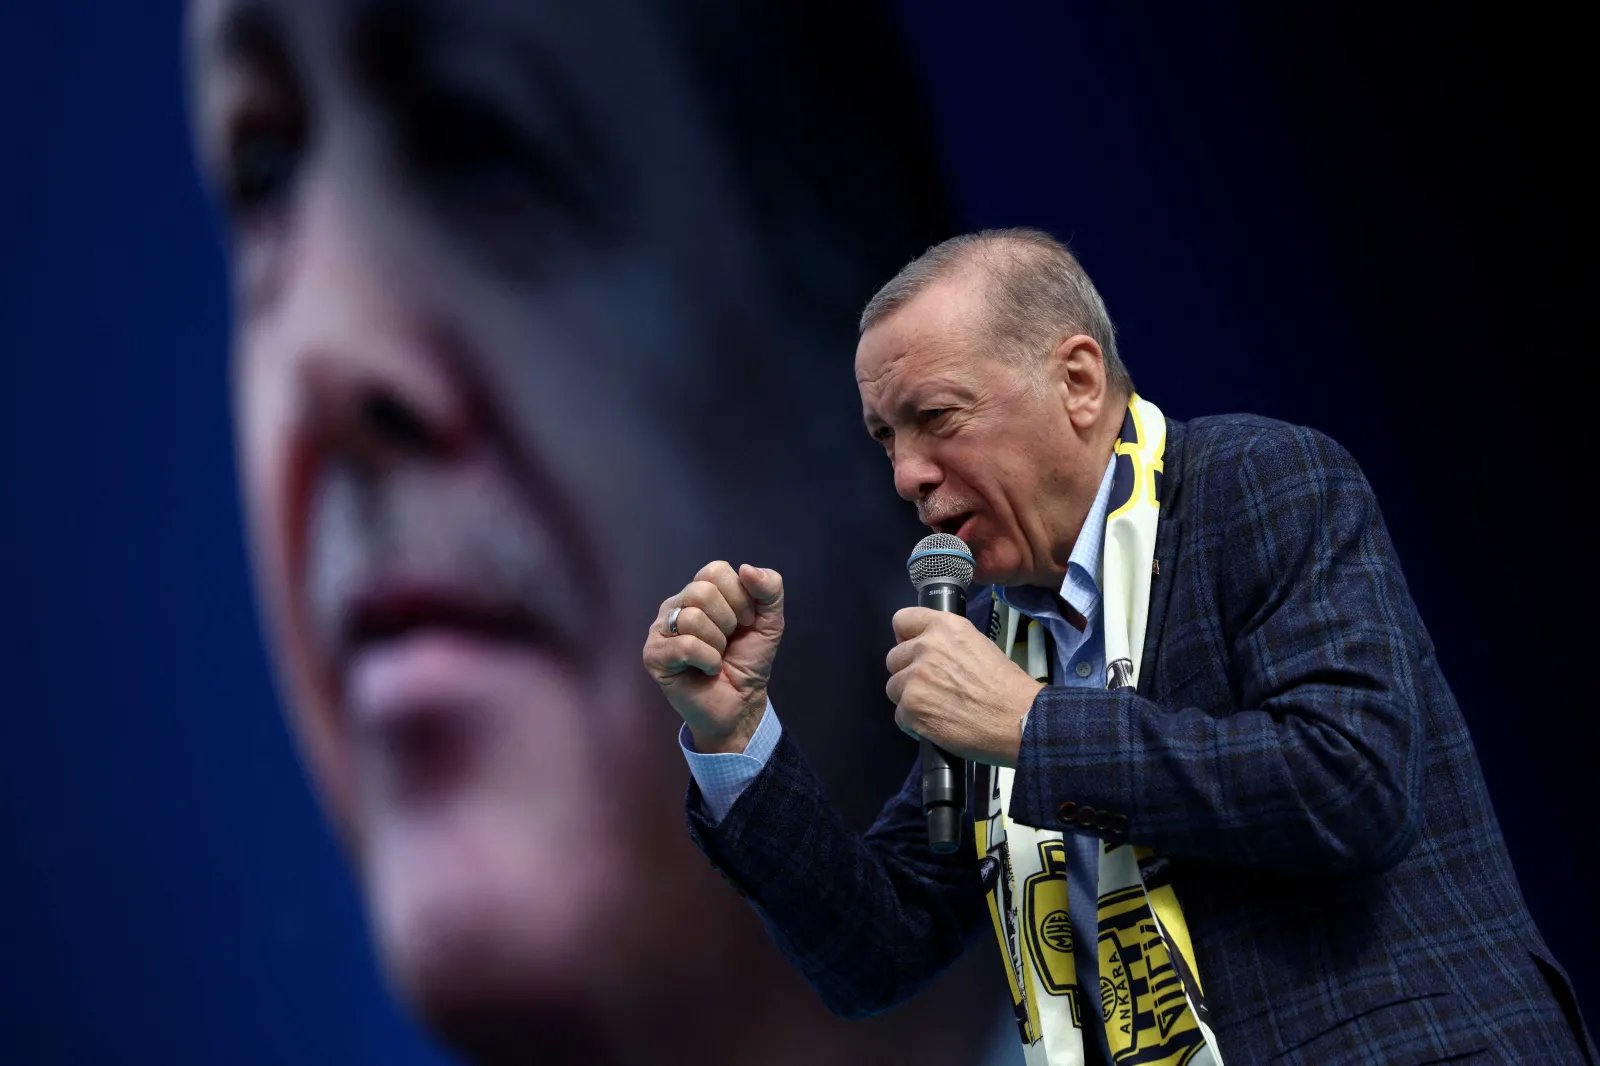 Zvanično: Erdogan proglašen predsjednikom Turske